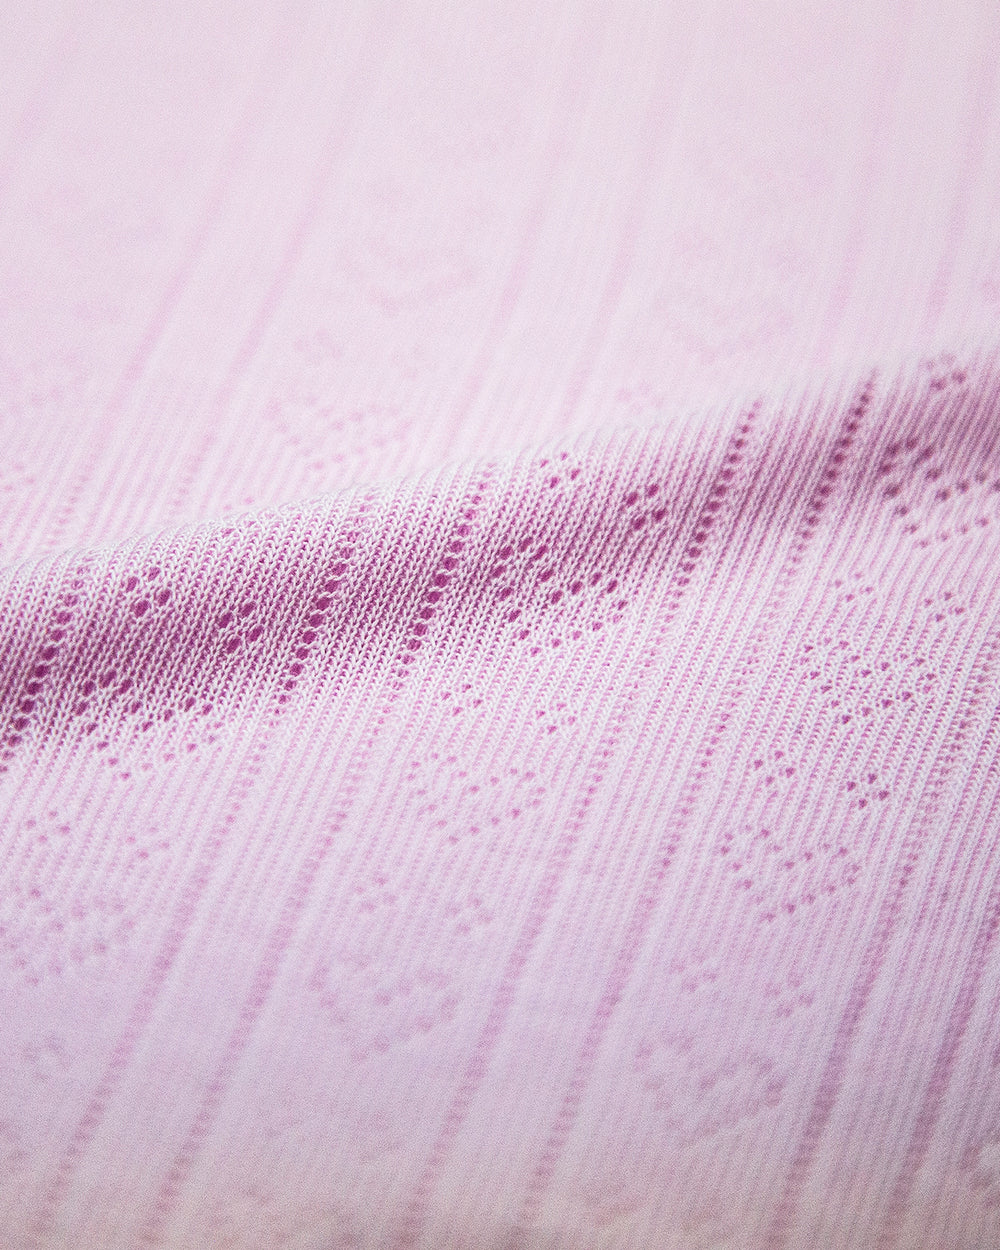 Pointelle Knit Long Pyjama Set - Lilac Stripe & Stare